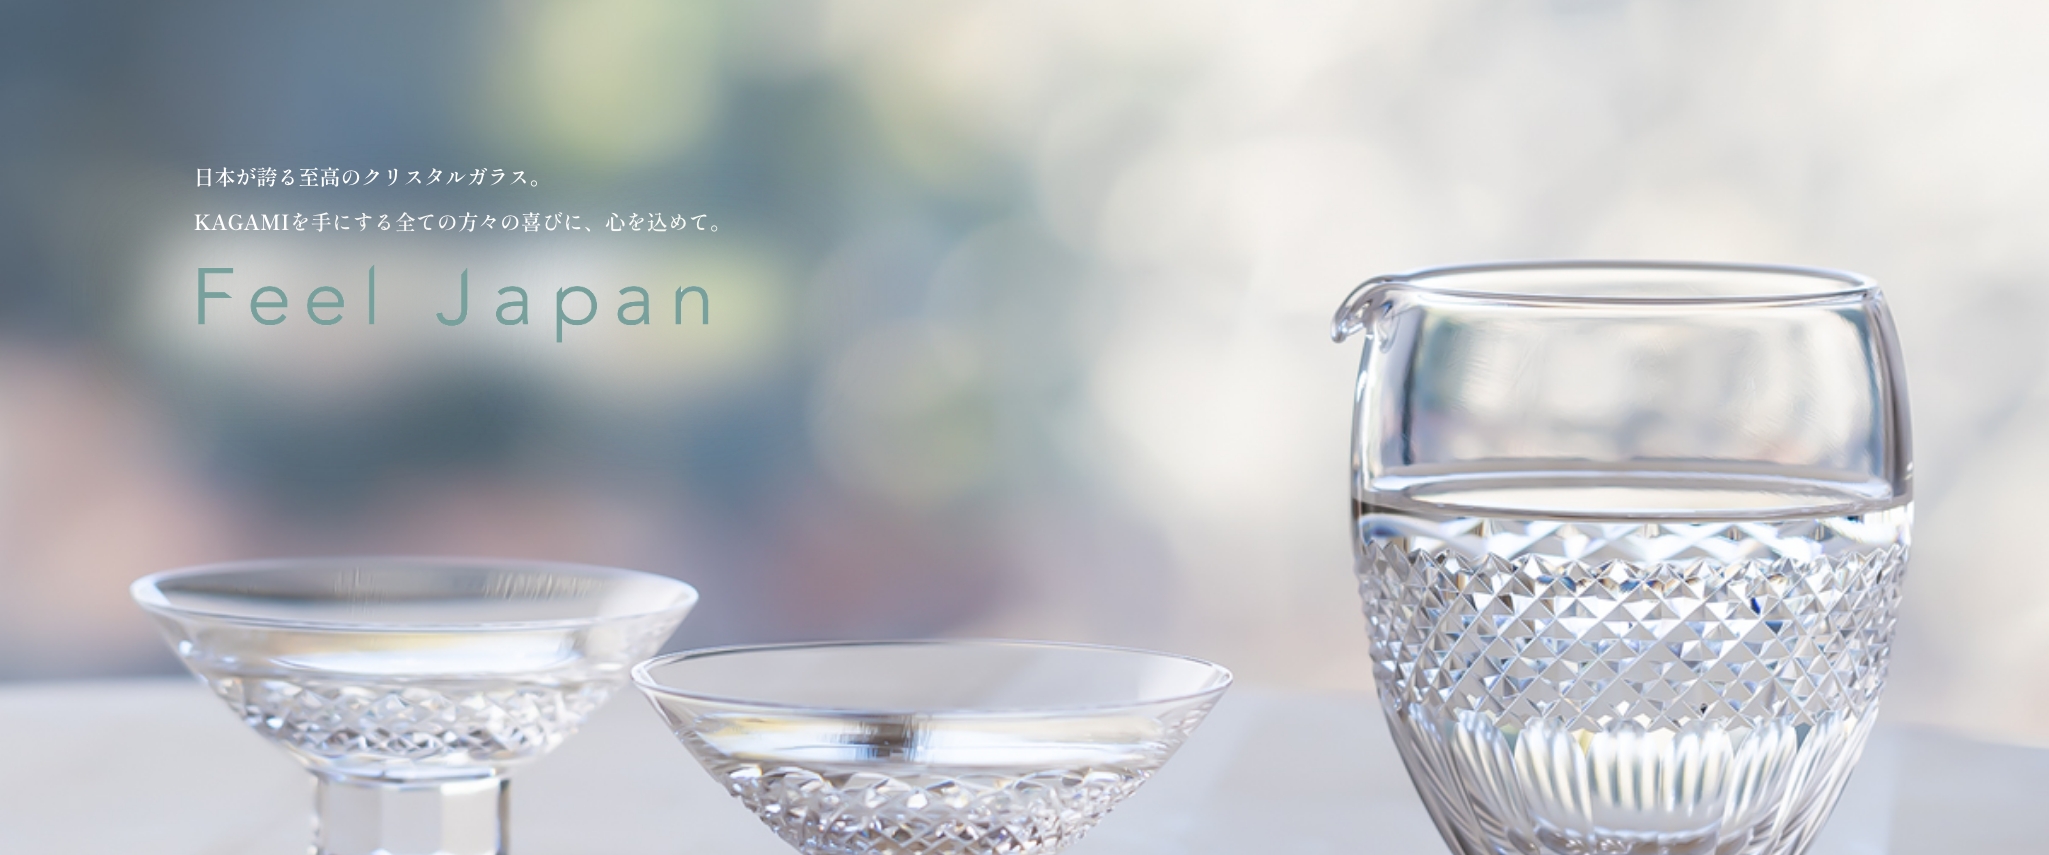 日本が誇る至高のクリスタルガラス。KAGAMIを手にする全ての方々の喜びに、心を込めて。